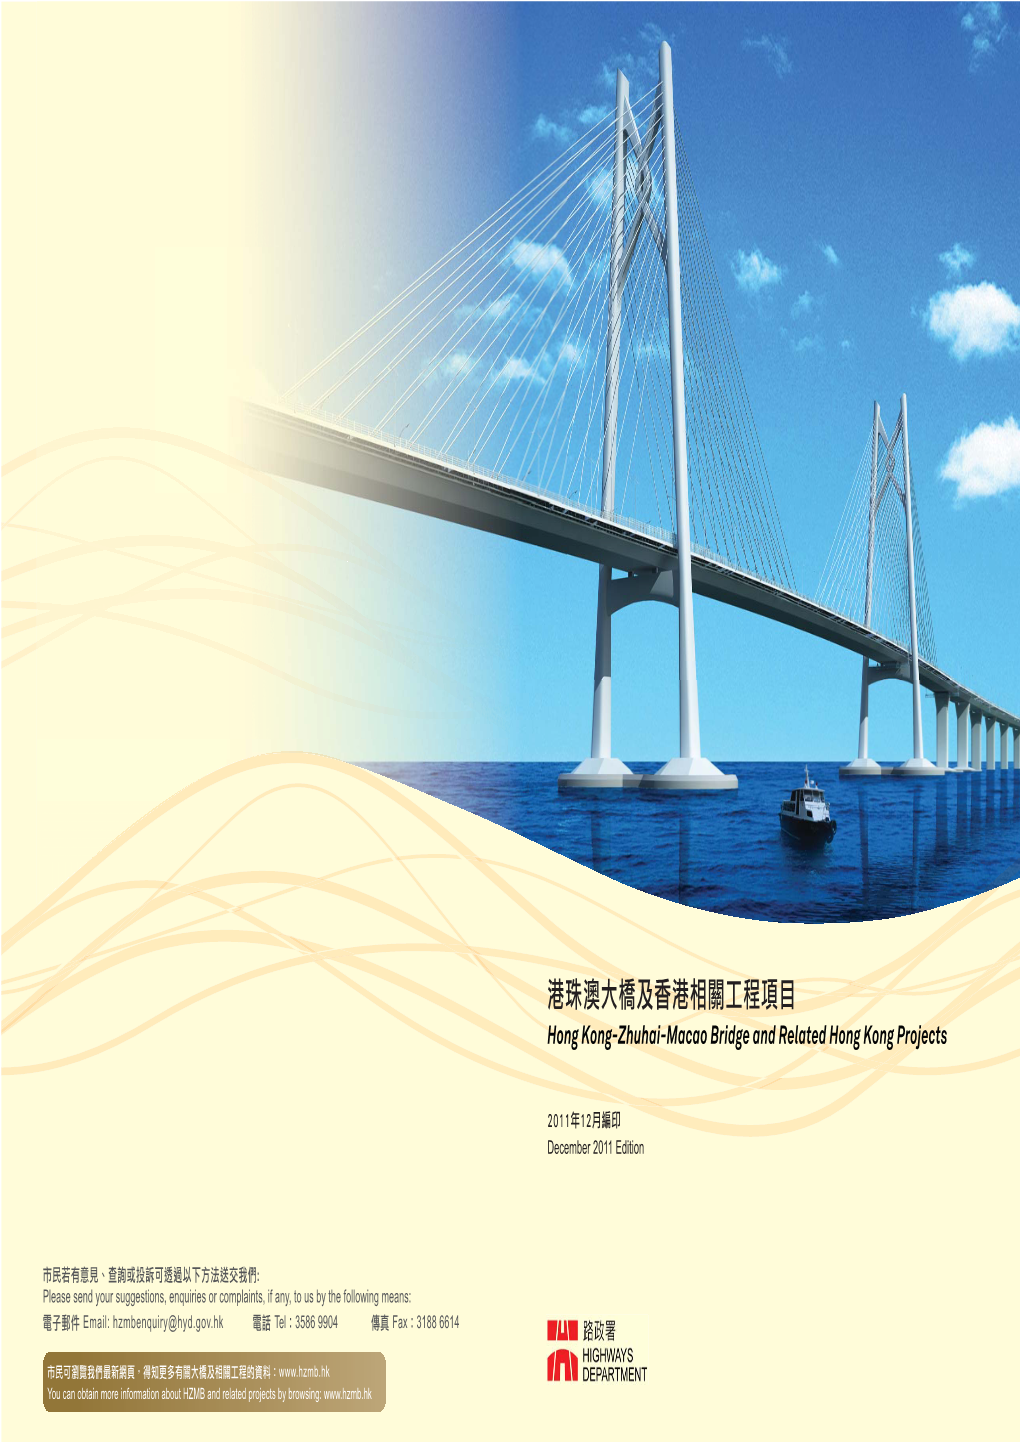 港珠澳大橋及香港相關工程項目 Hong Kong-Zhuhai-Macao Bridge and Related Hong Kong Projects